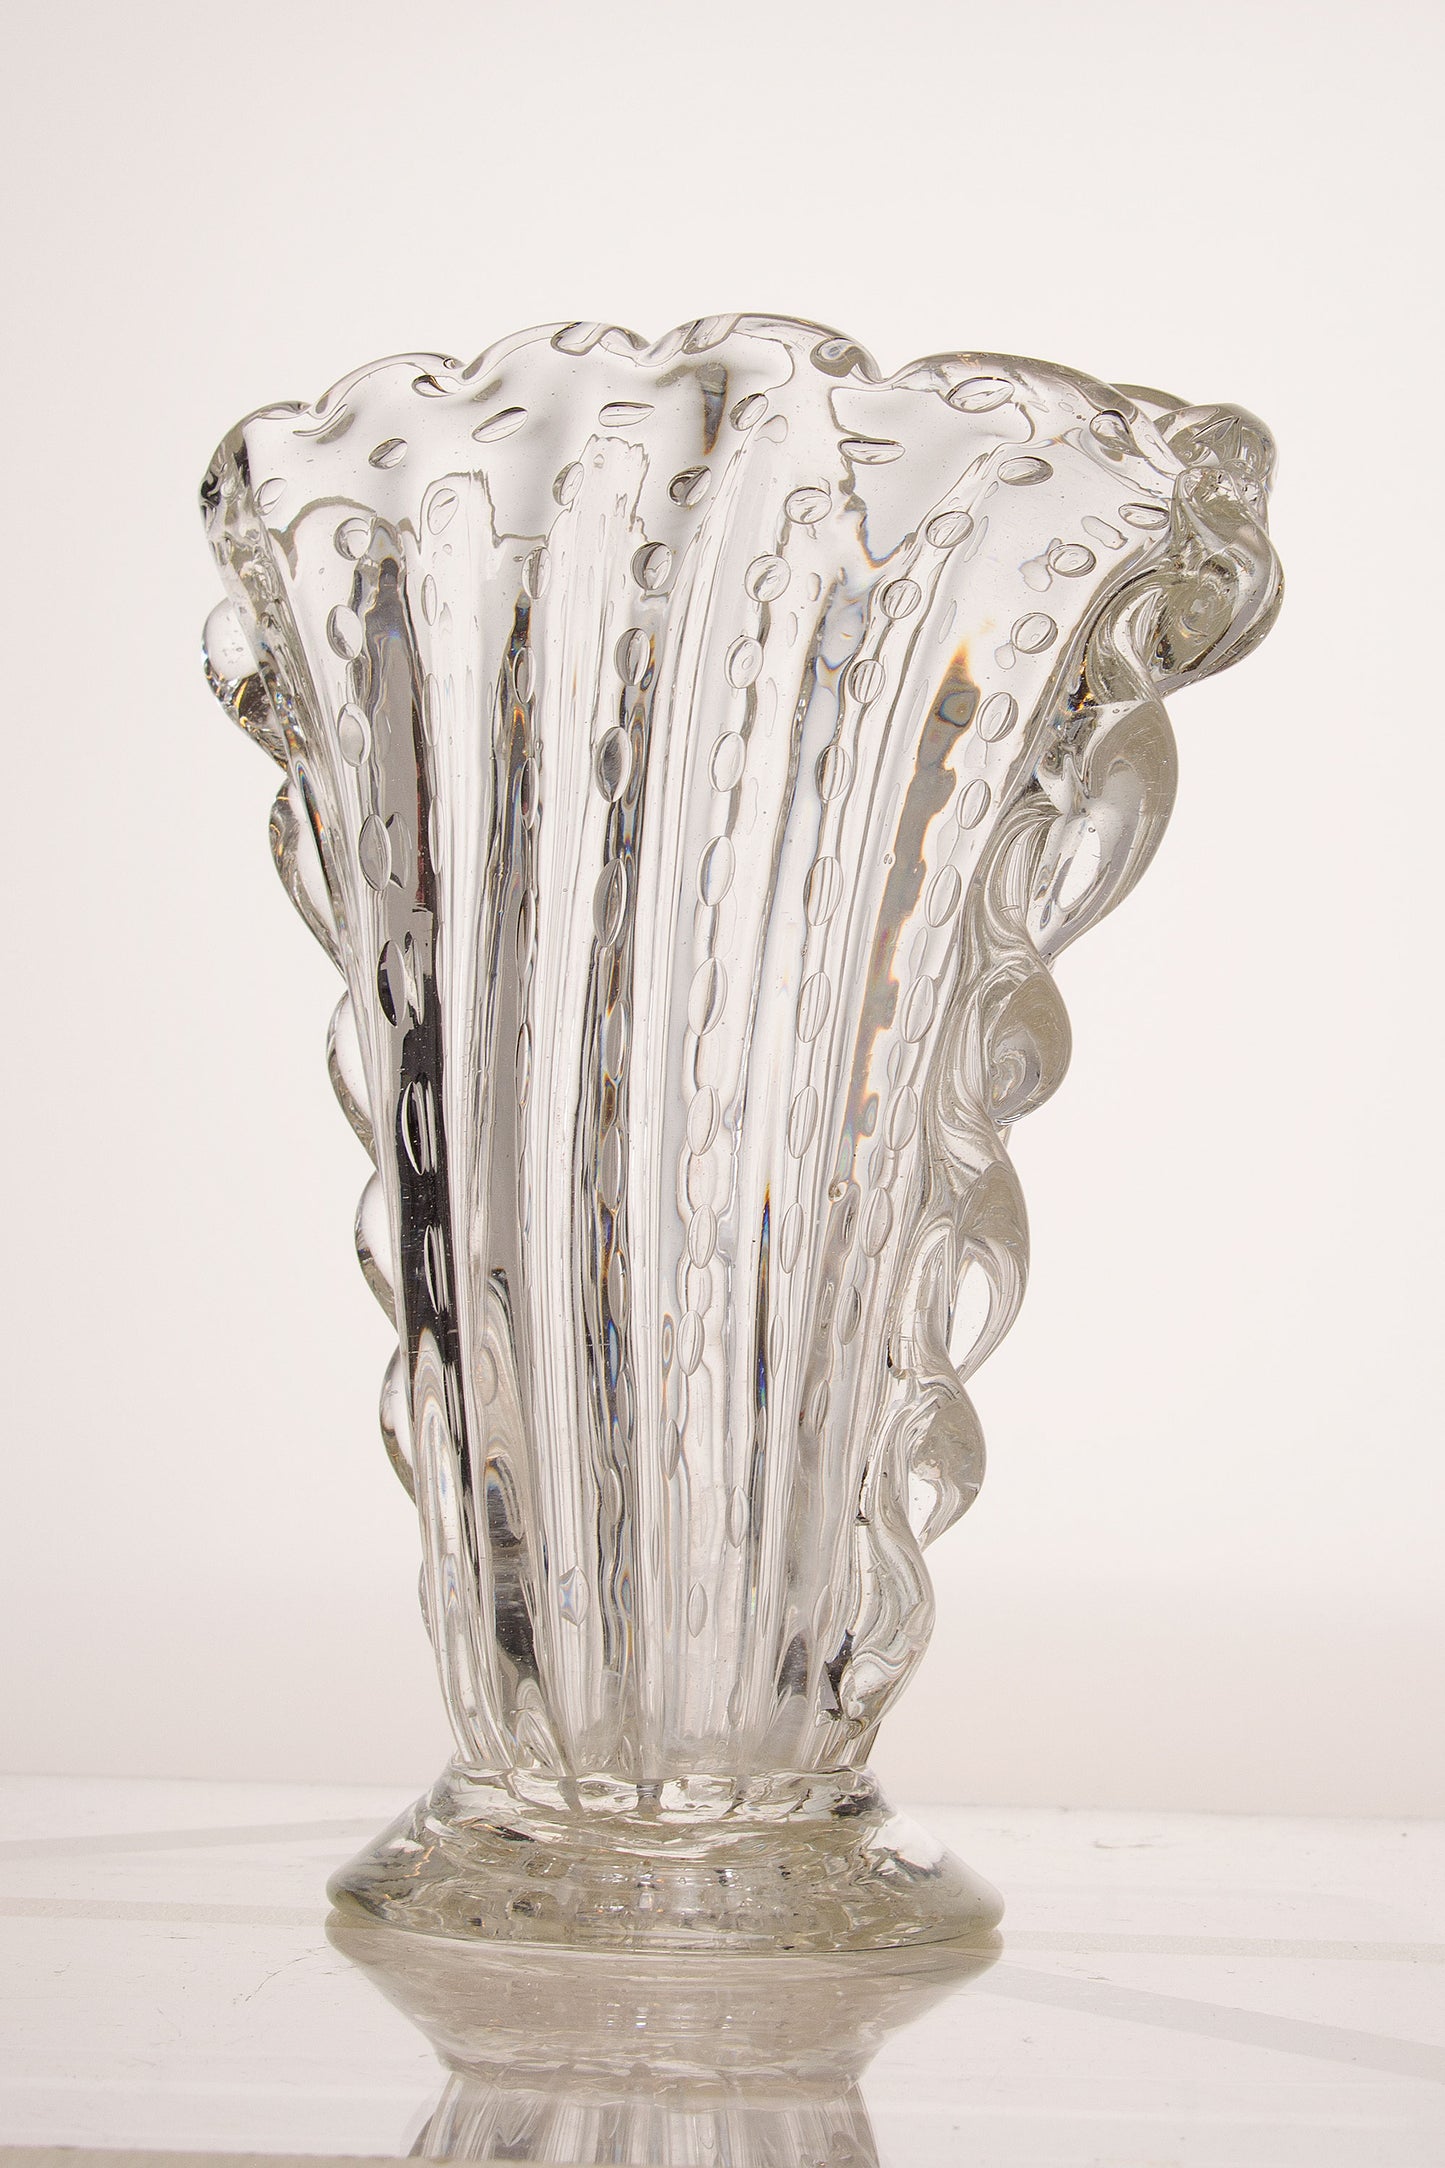 Vaso a forma ovale in vetro cristallo veneziano, realizzato nelle officinedi Barovier & Toso.-Lo Stile Italiano